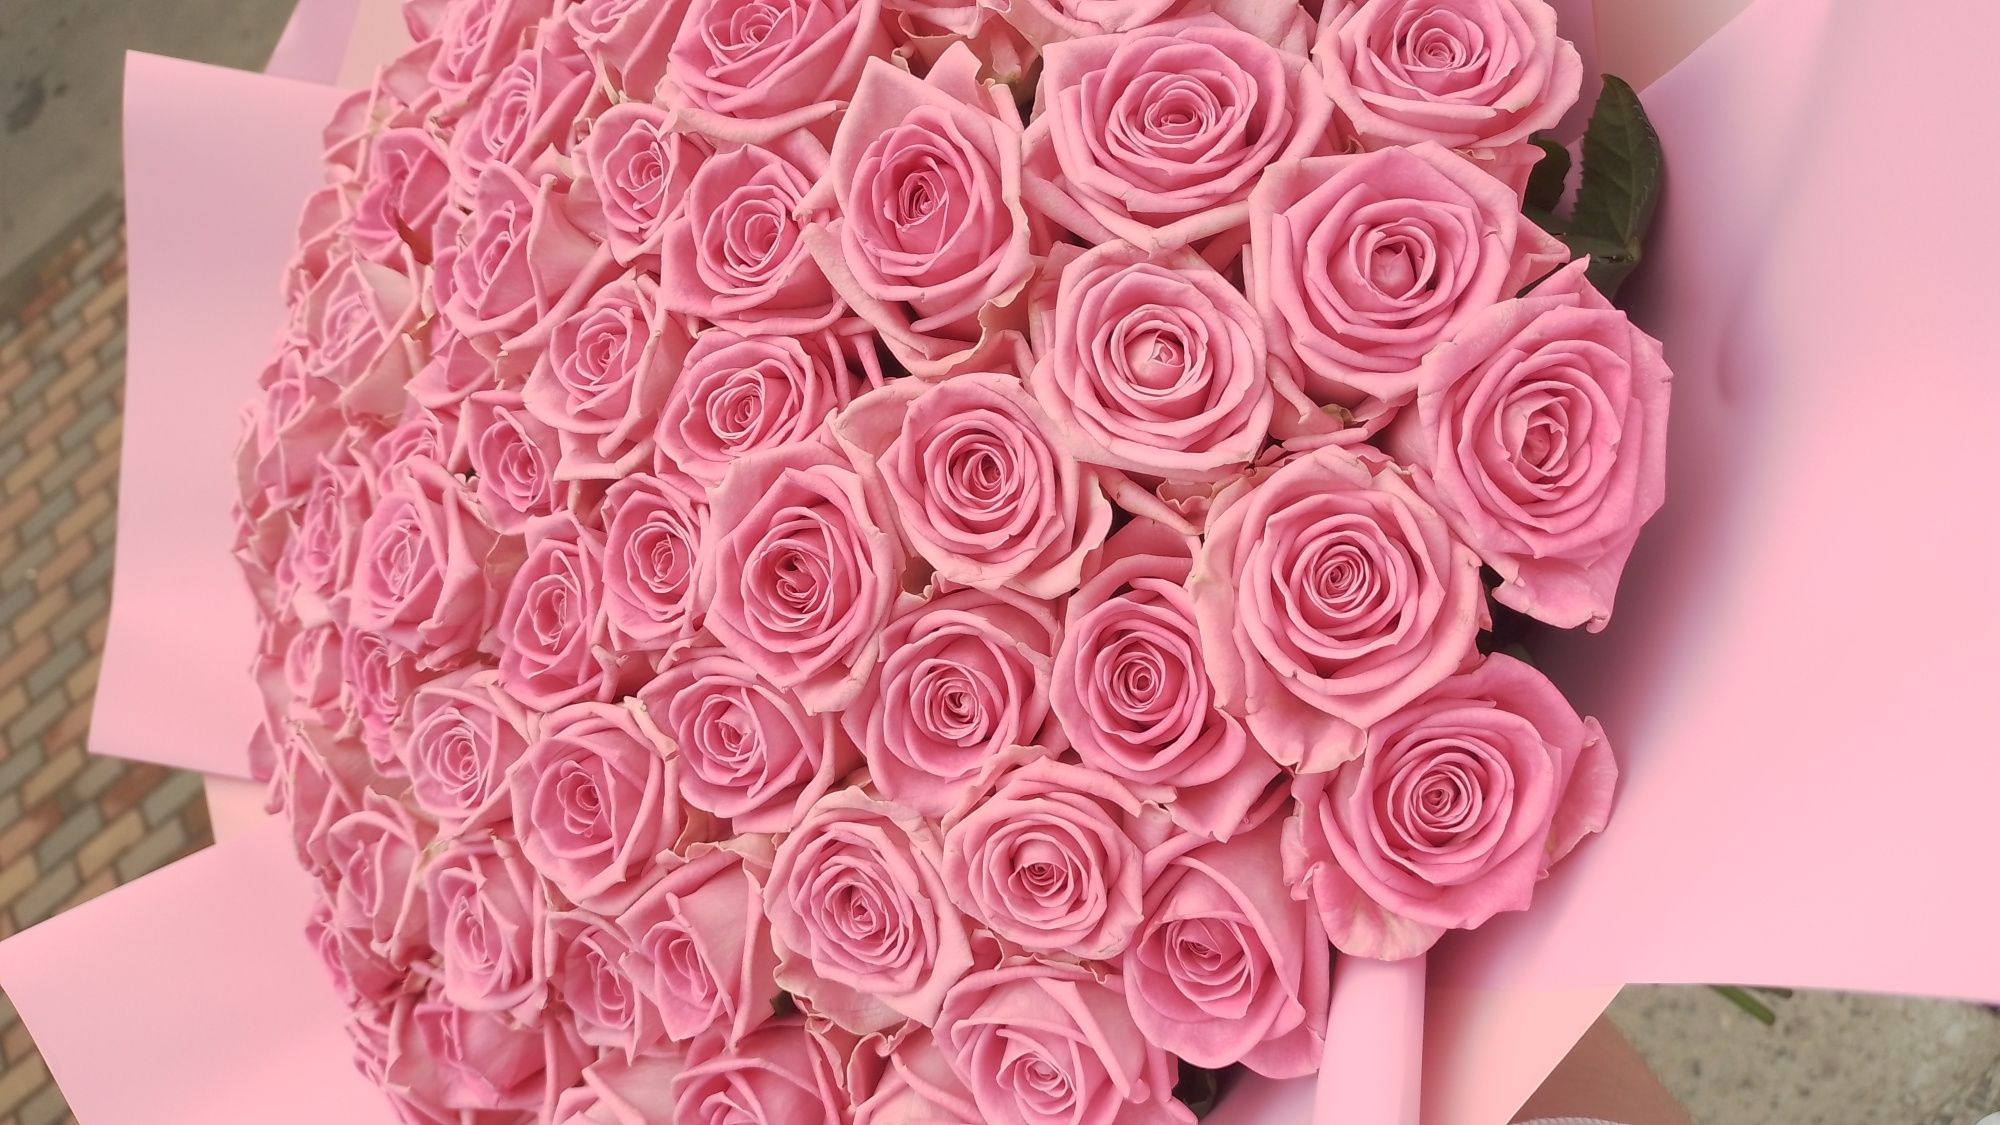 Букет 101 роза • Доставка цветов • 101 троянда (70см.) • 51 троянда •